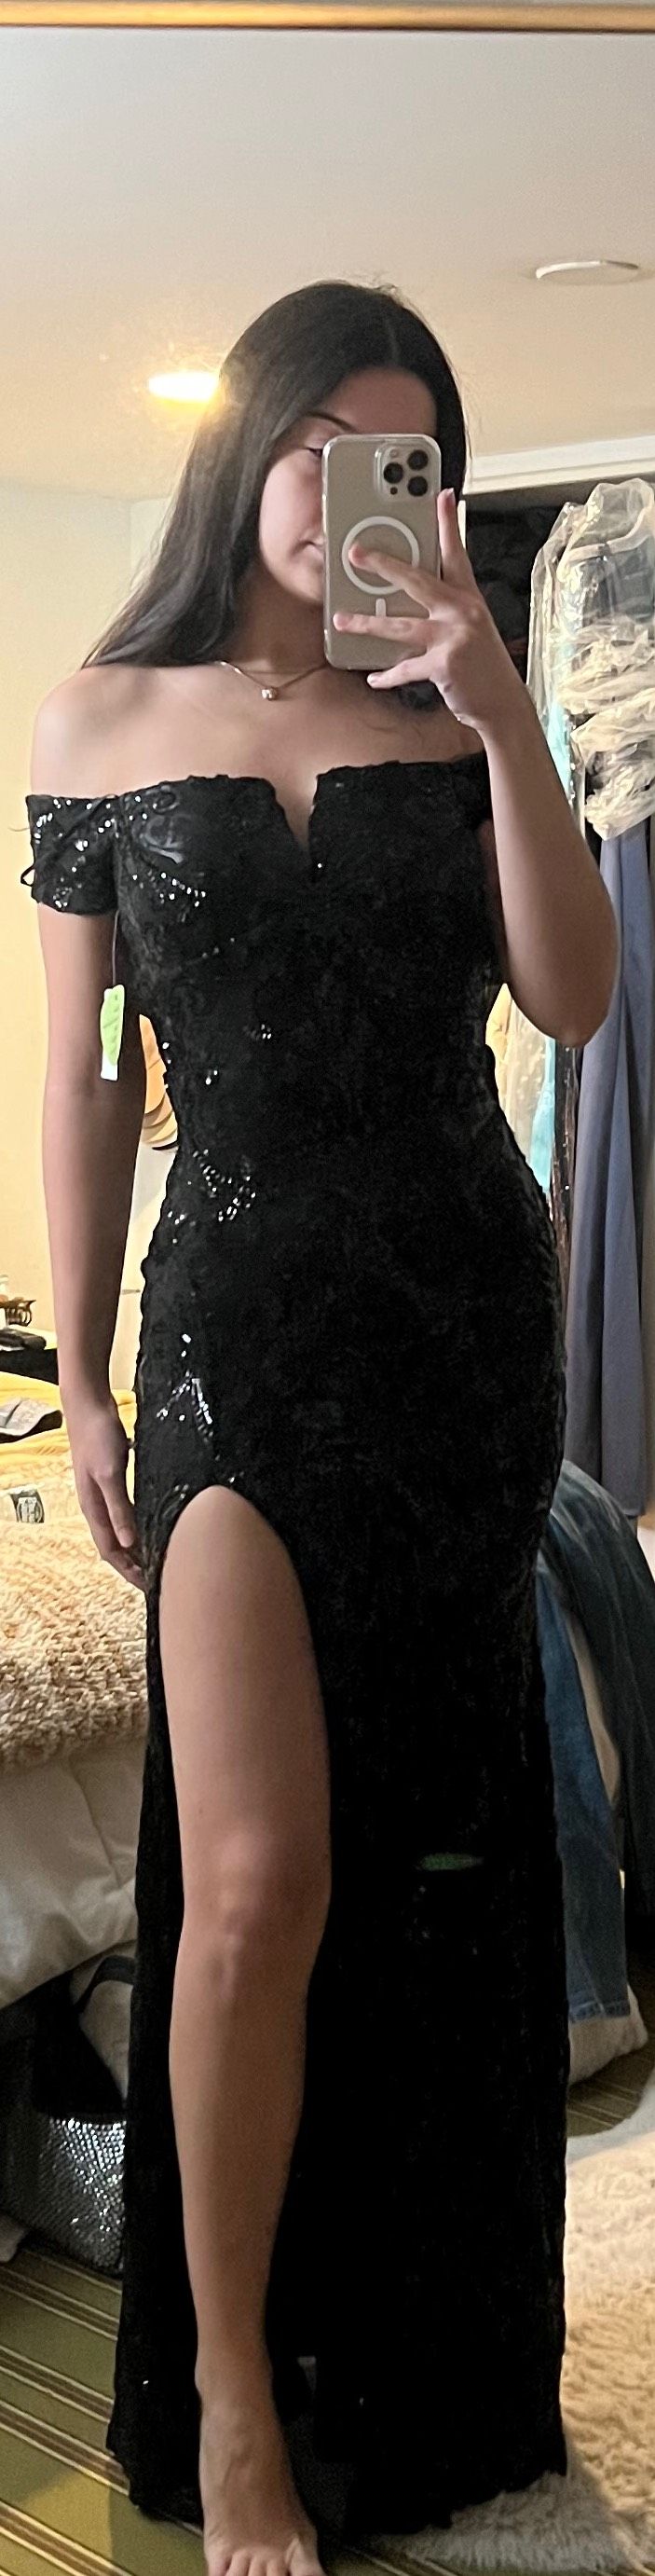 Windsor Size 4 Off The Shoulder Black Side Slit Dress on Queenly